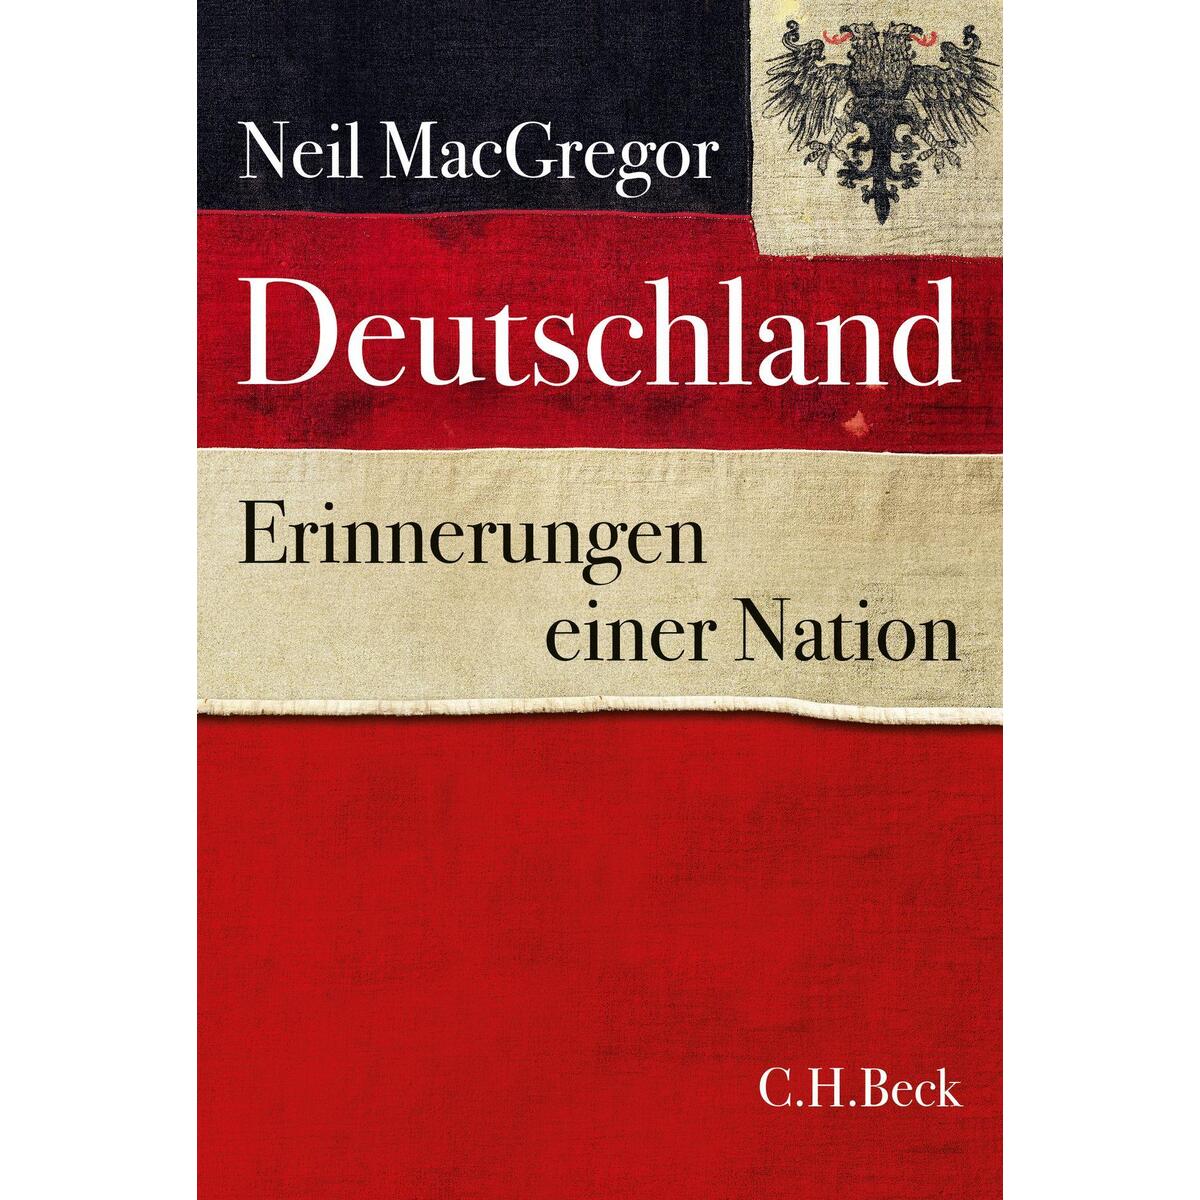 Deutschland von C.H. Beck